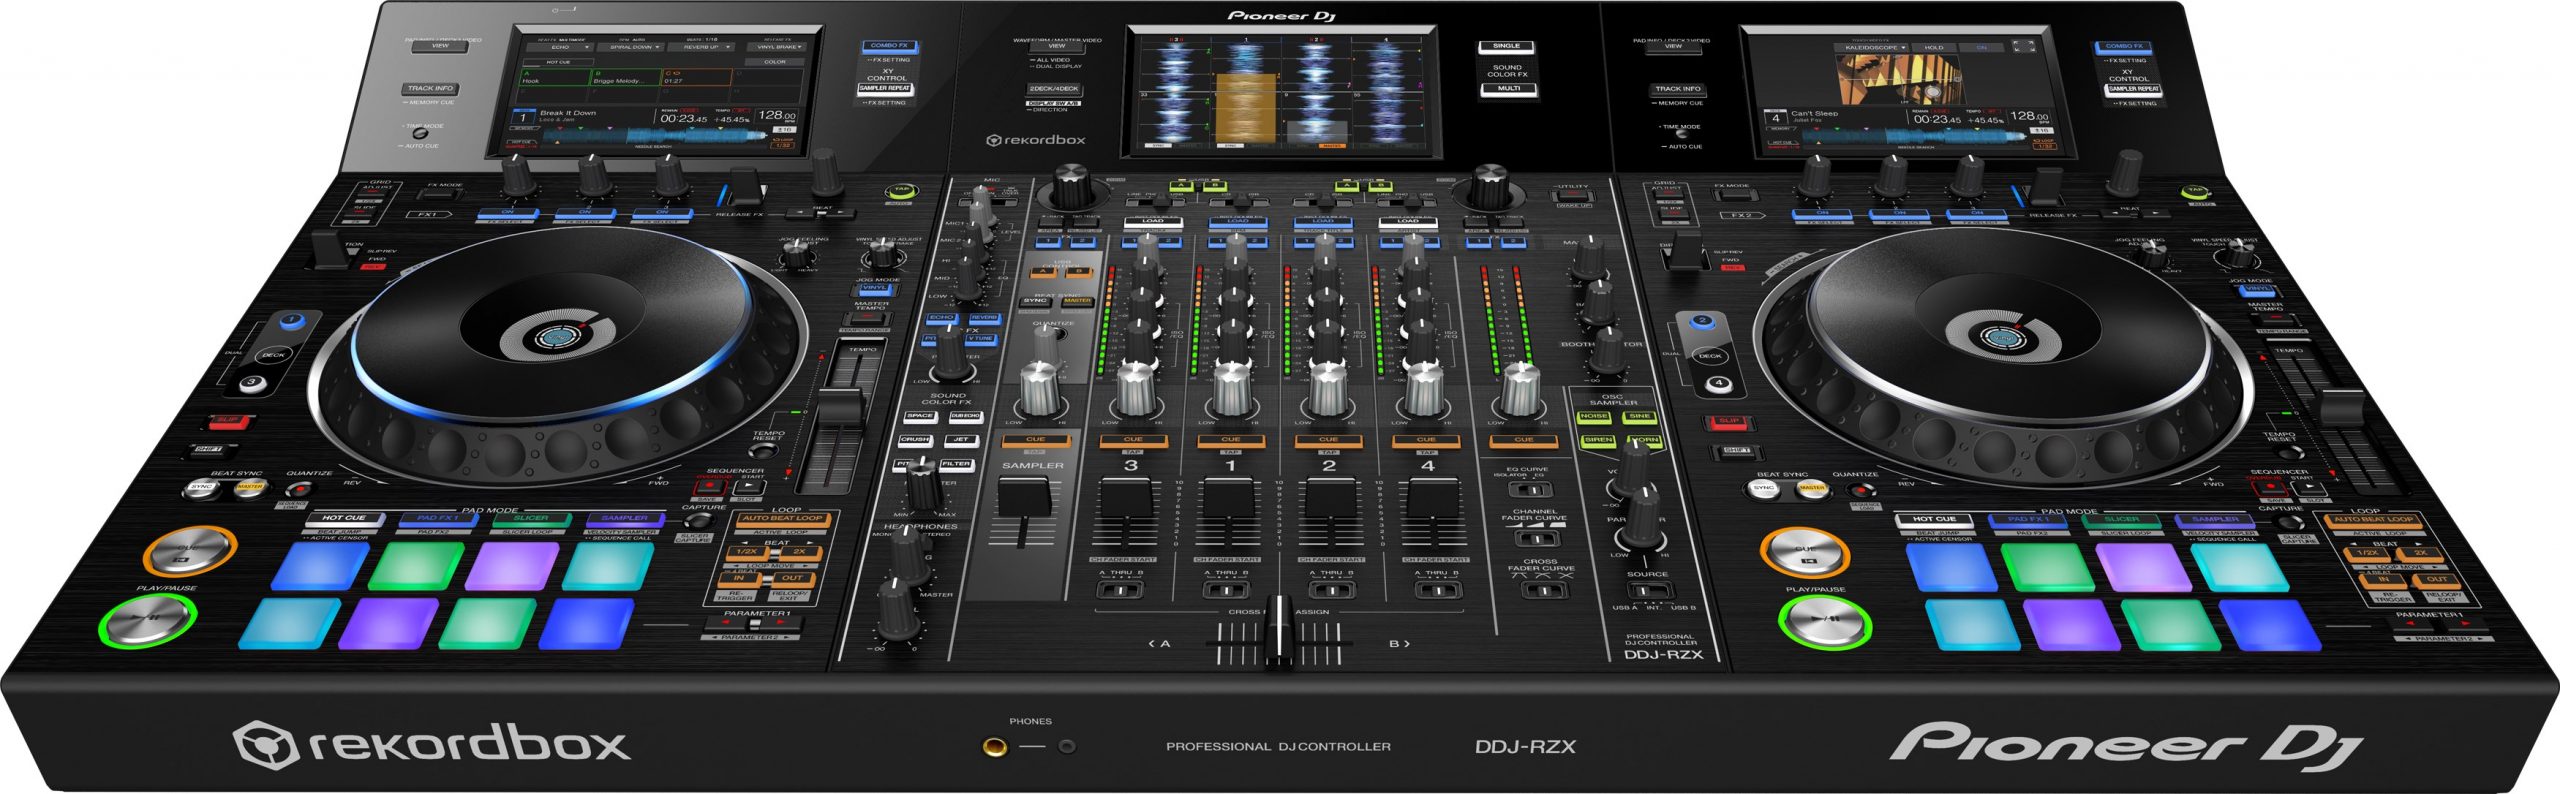 PIONEER DDJ-RZX CONSOLLE DJ 4 CANALI REKORDBOX DJ E REKORDBOX VIDEO USB SCHERMI 7 2